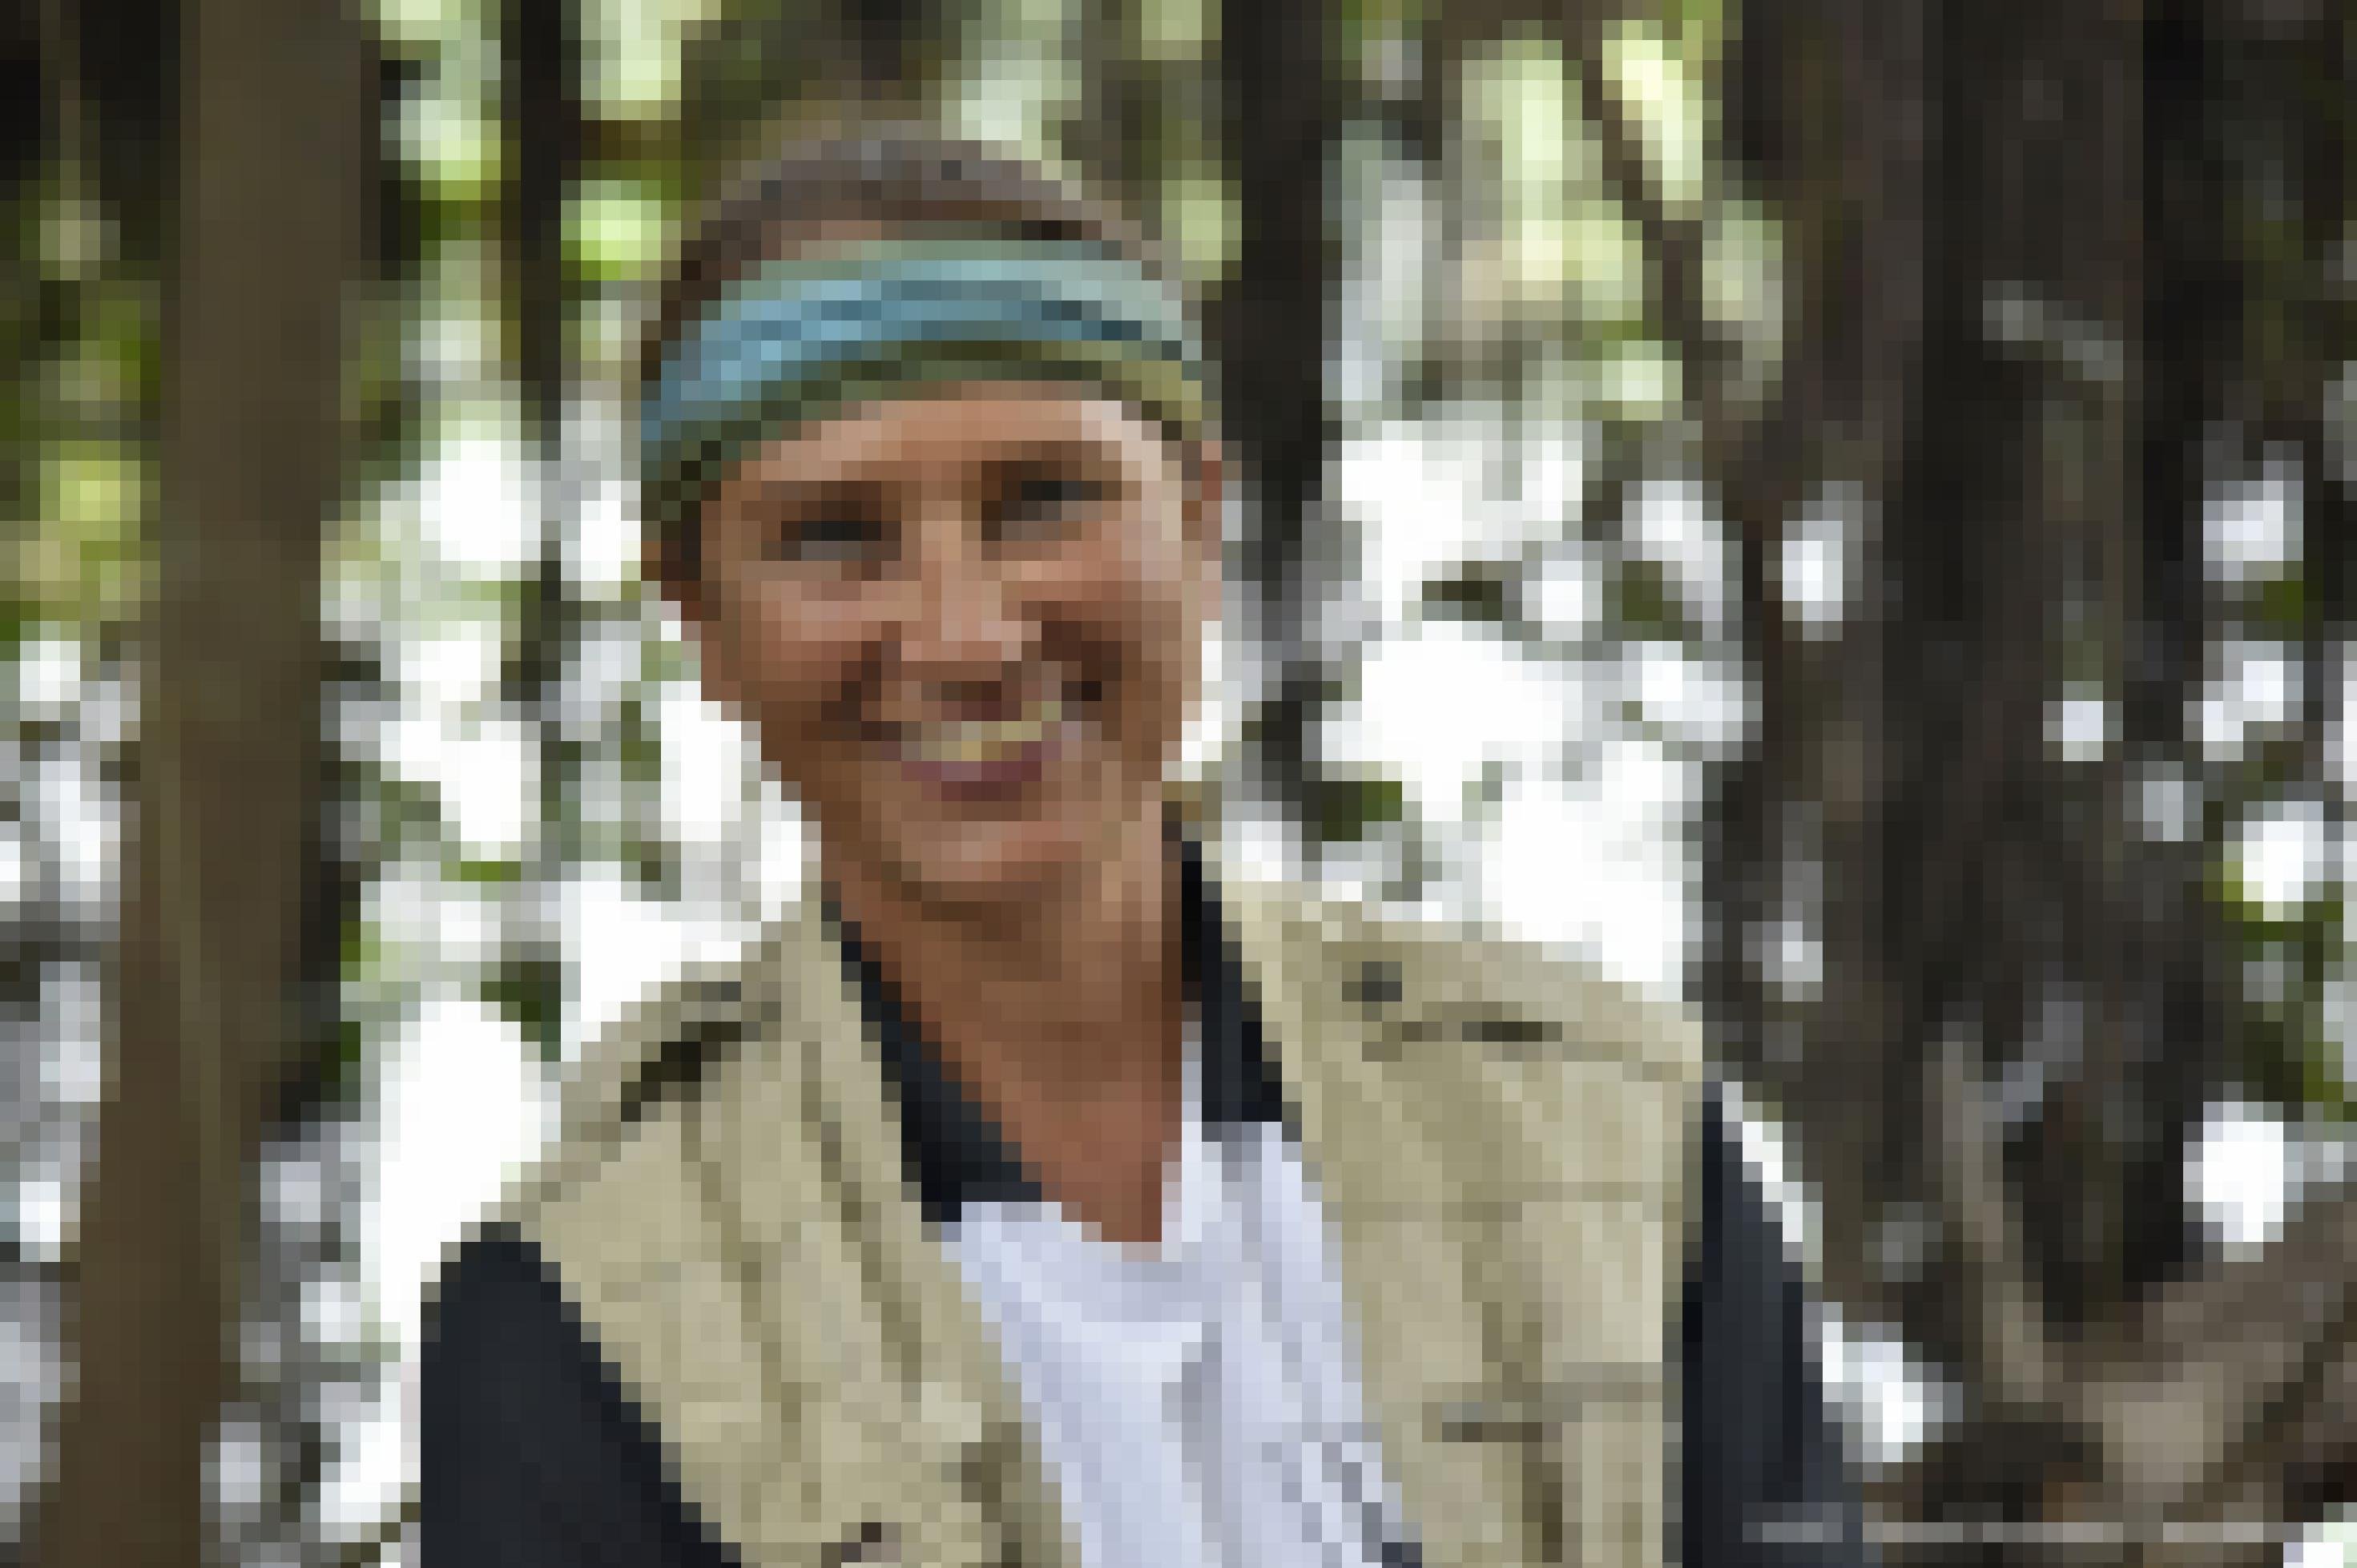 Freundlich lächelnde Frau mit grün-blauem Stirnband vor einem verschwommenen Regenwald